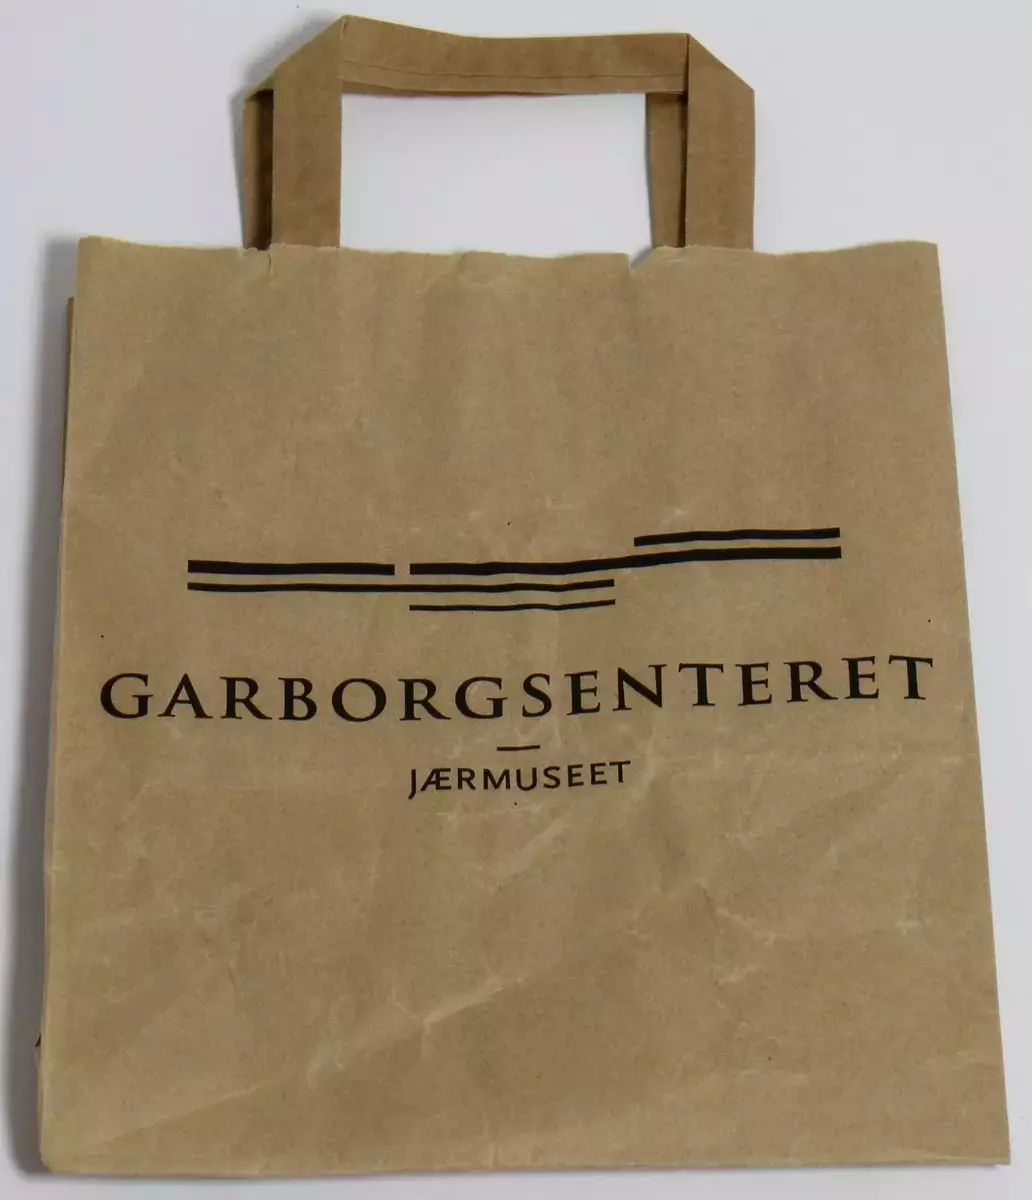 Handlenett frå Garborgsenteret, som er eit museum på Bryne i Time kommune. Garborgsenteret opna 5. september 2012 til minne om Arne og Hulda Garborg, og er ei avdeling av Jærmuseet. Handlenettet er i papir.